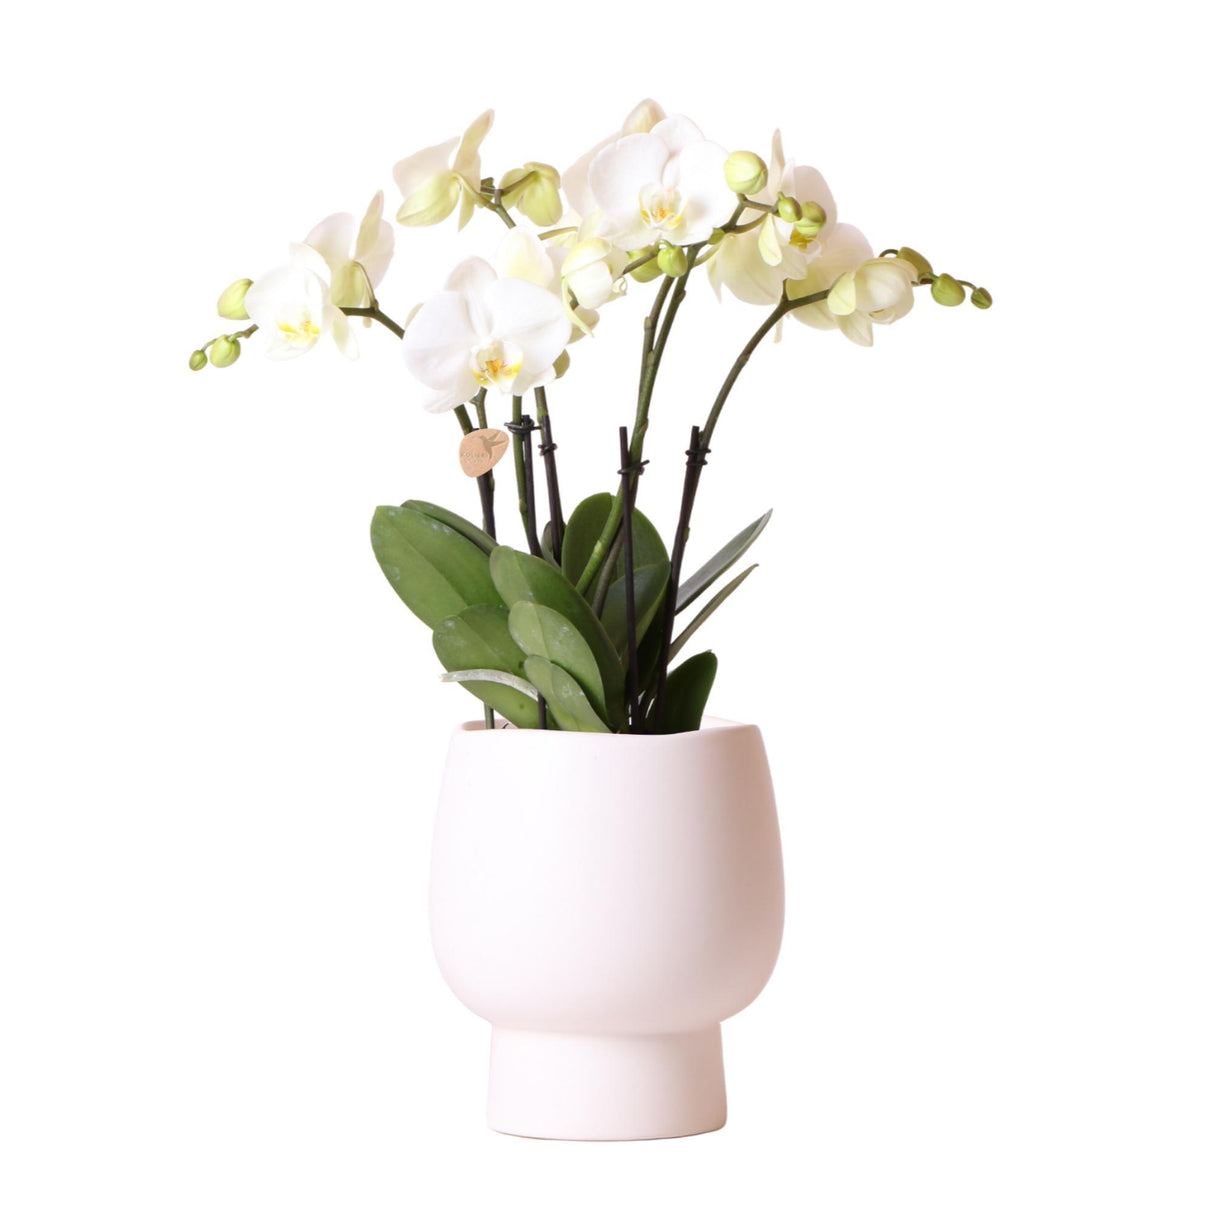 Orchidée blanche et son cache-pot blanc - plante d'intérieur fleurie